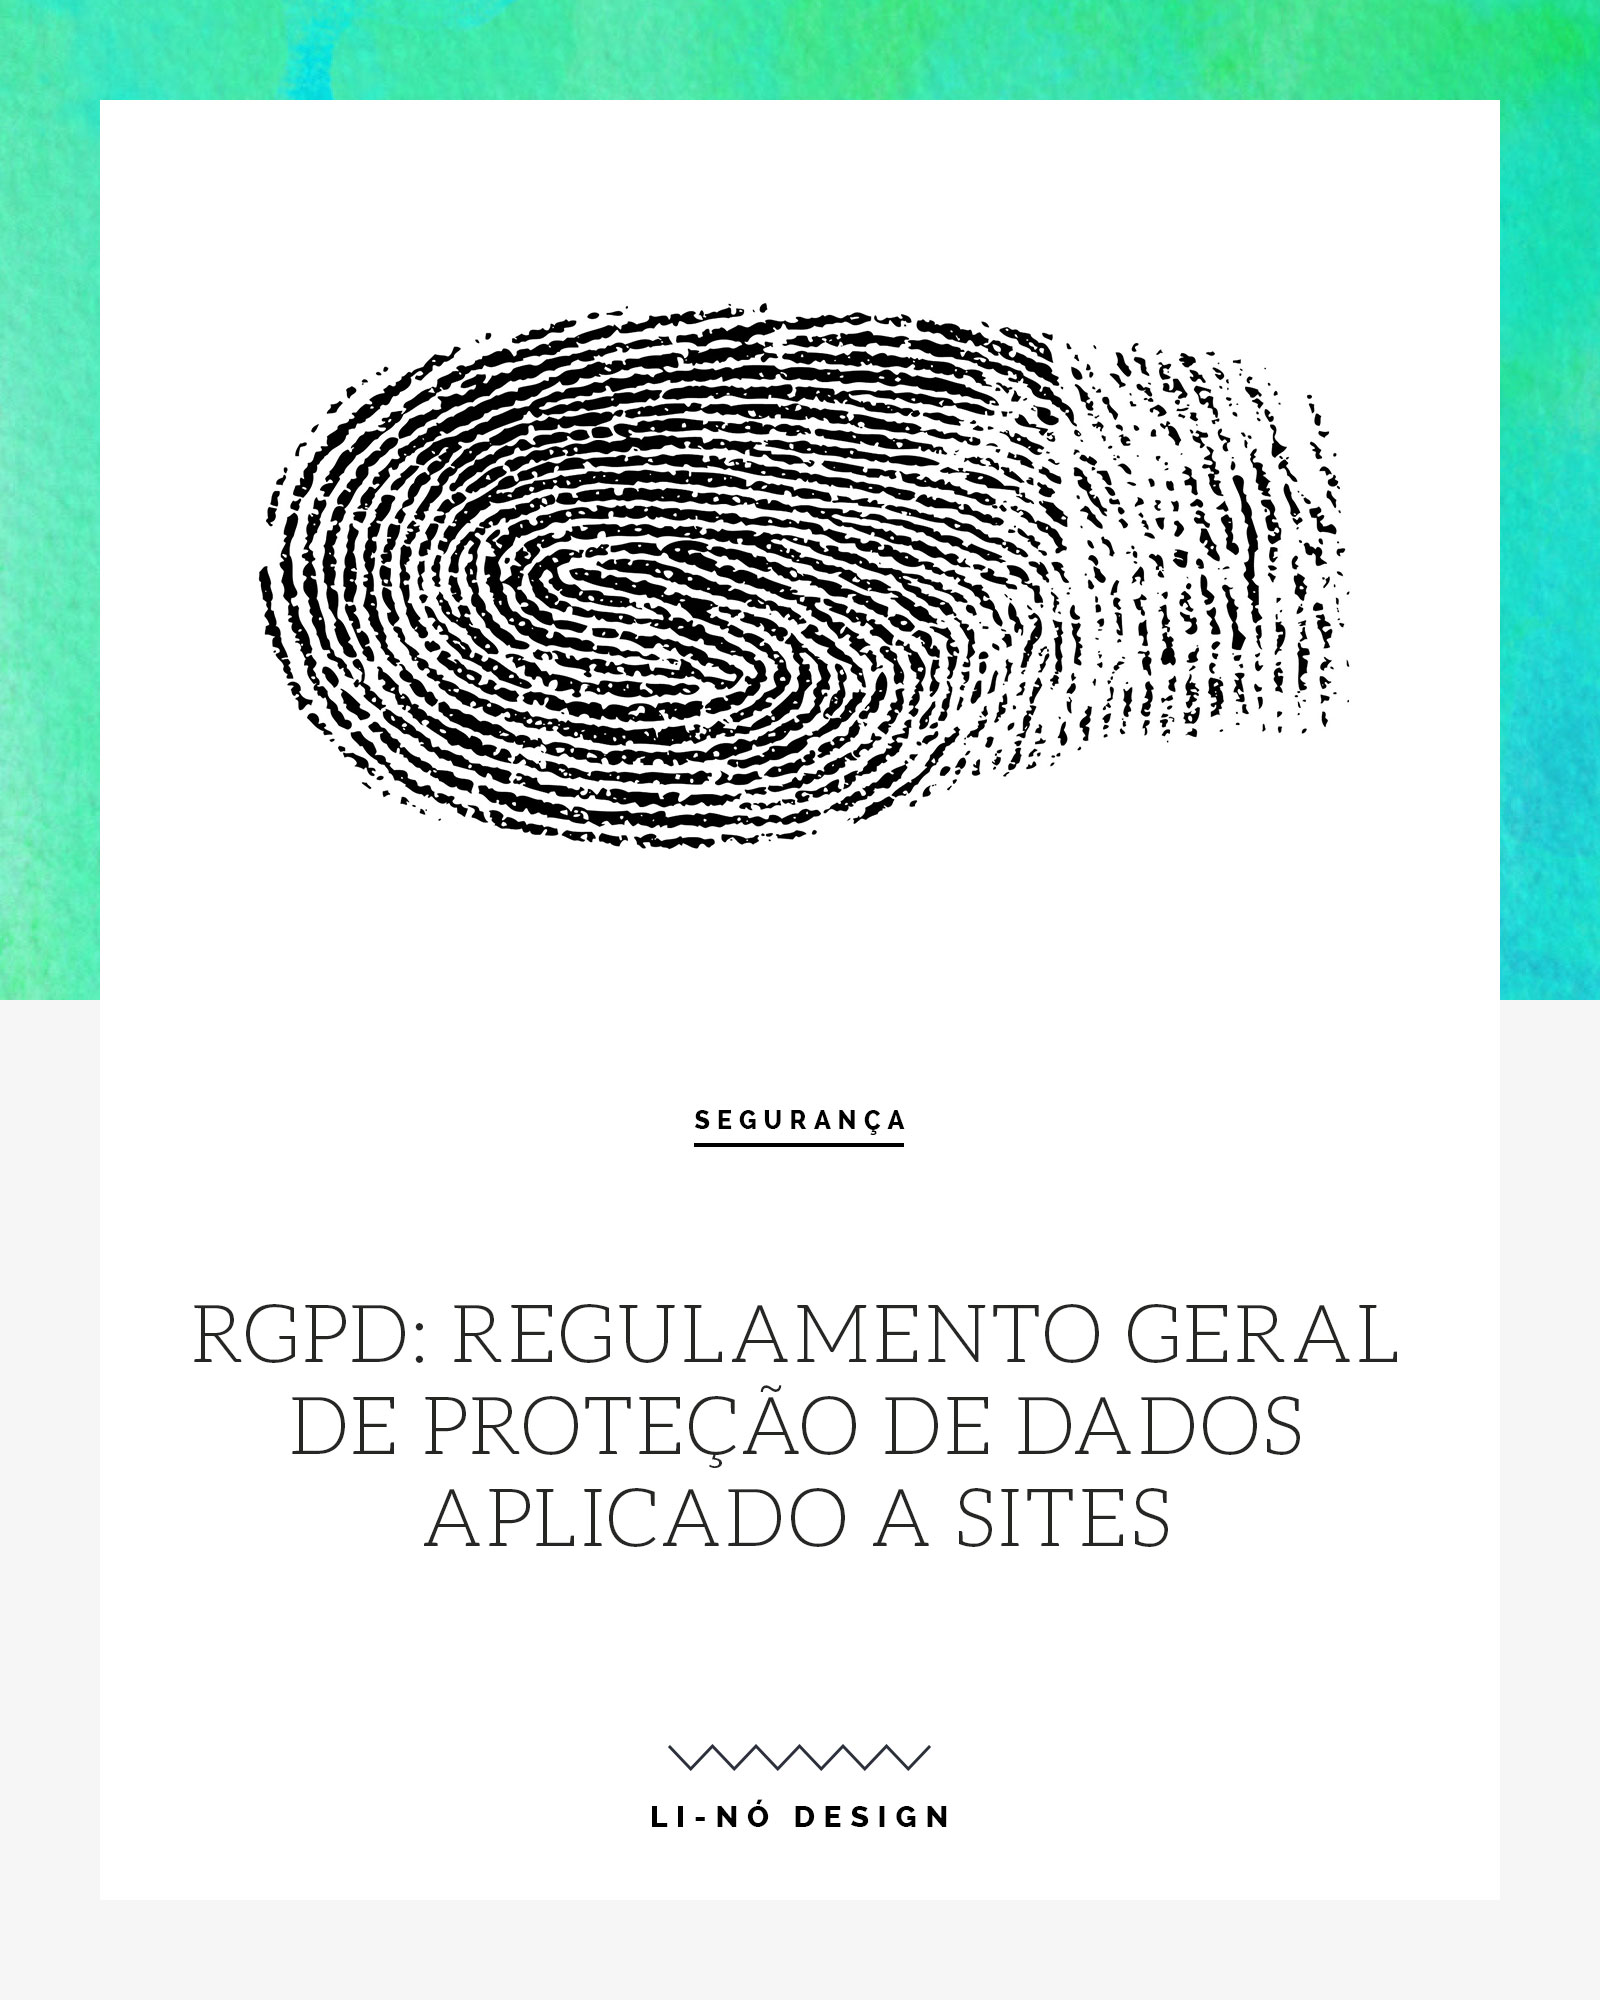 RGPD - Proteção de Dados aplicado a sites